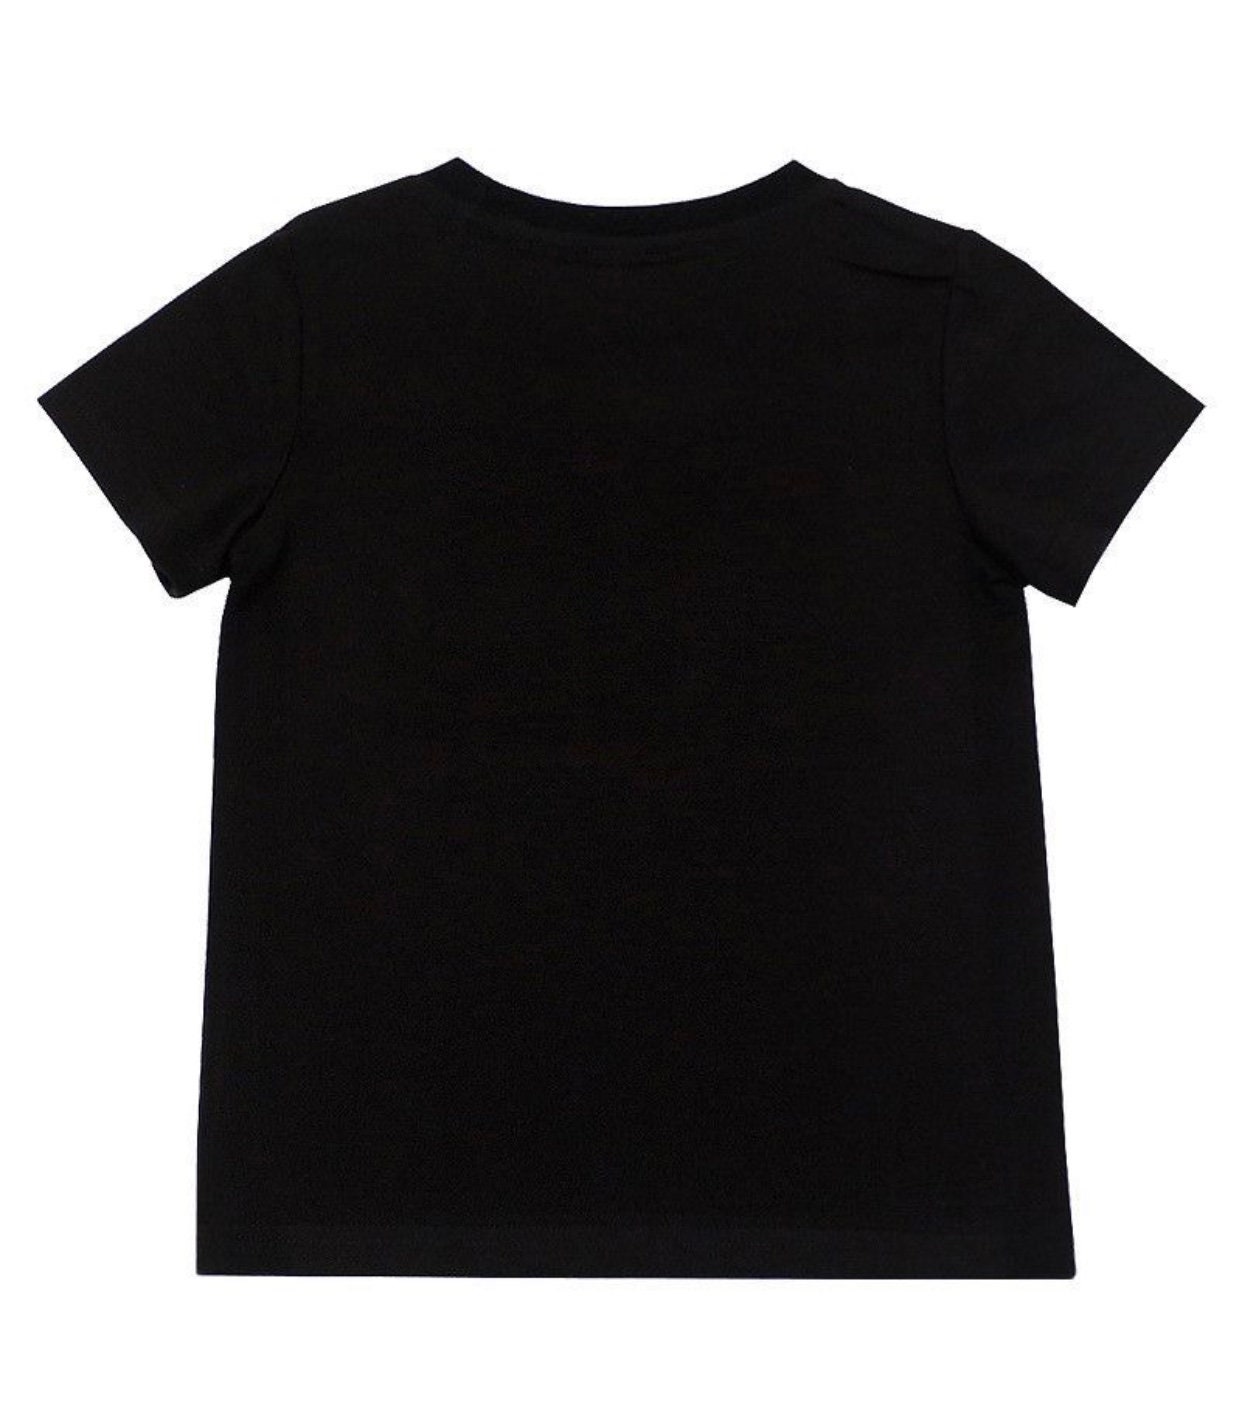 Children's Black Short Sleeve Speak Love T-shirt - Etsy